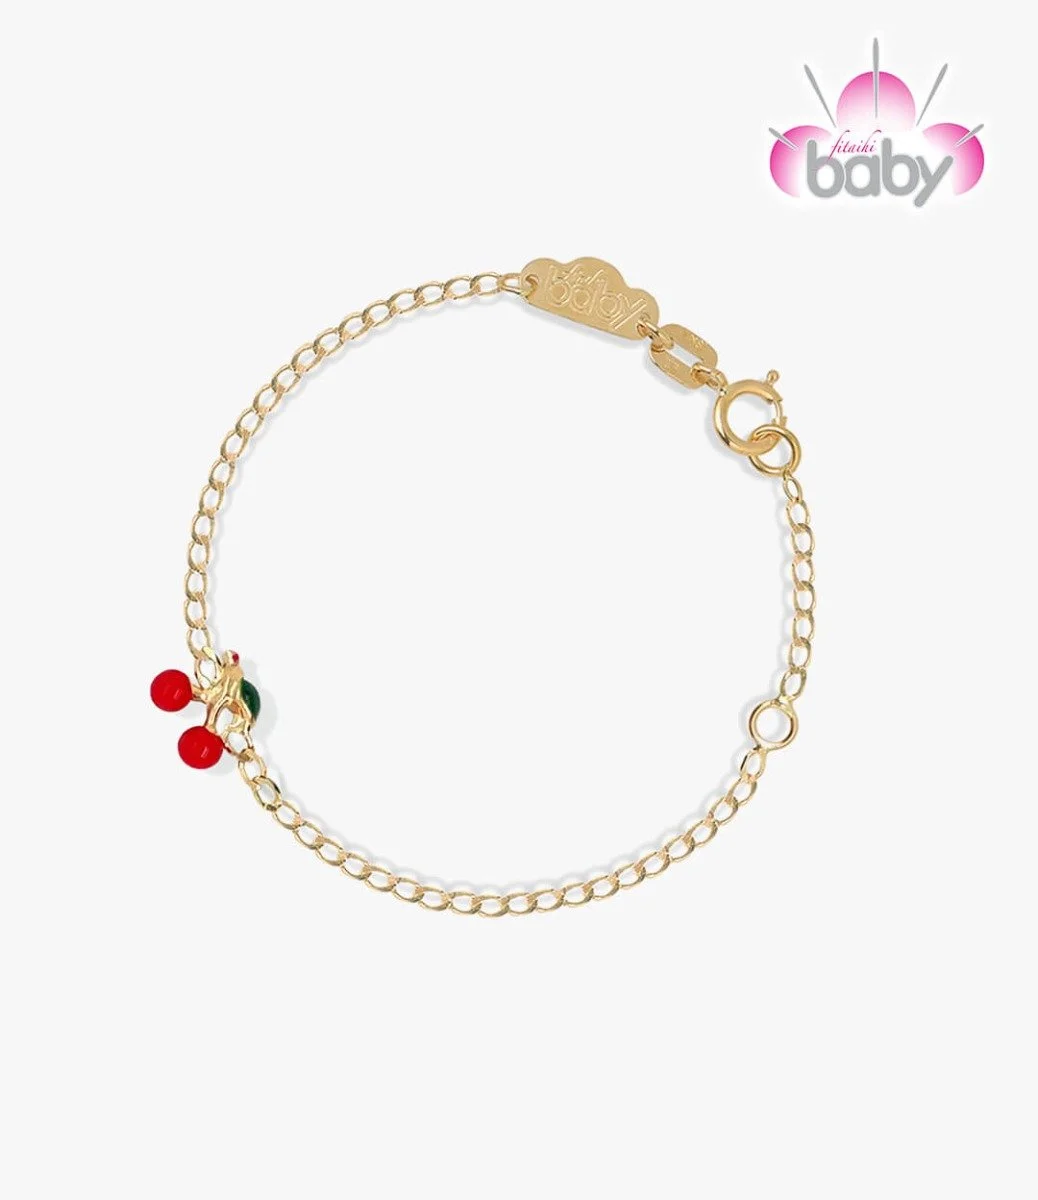 The Cherries Bracelet by BabyFitaihi